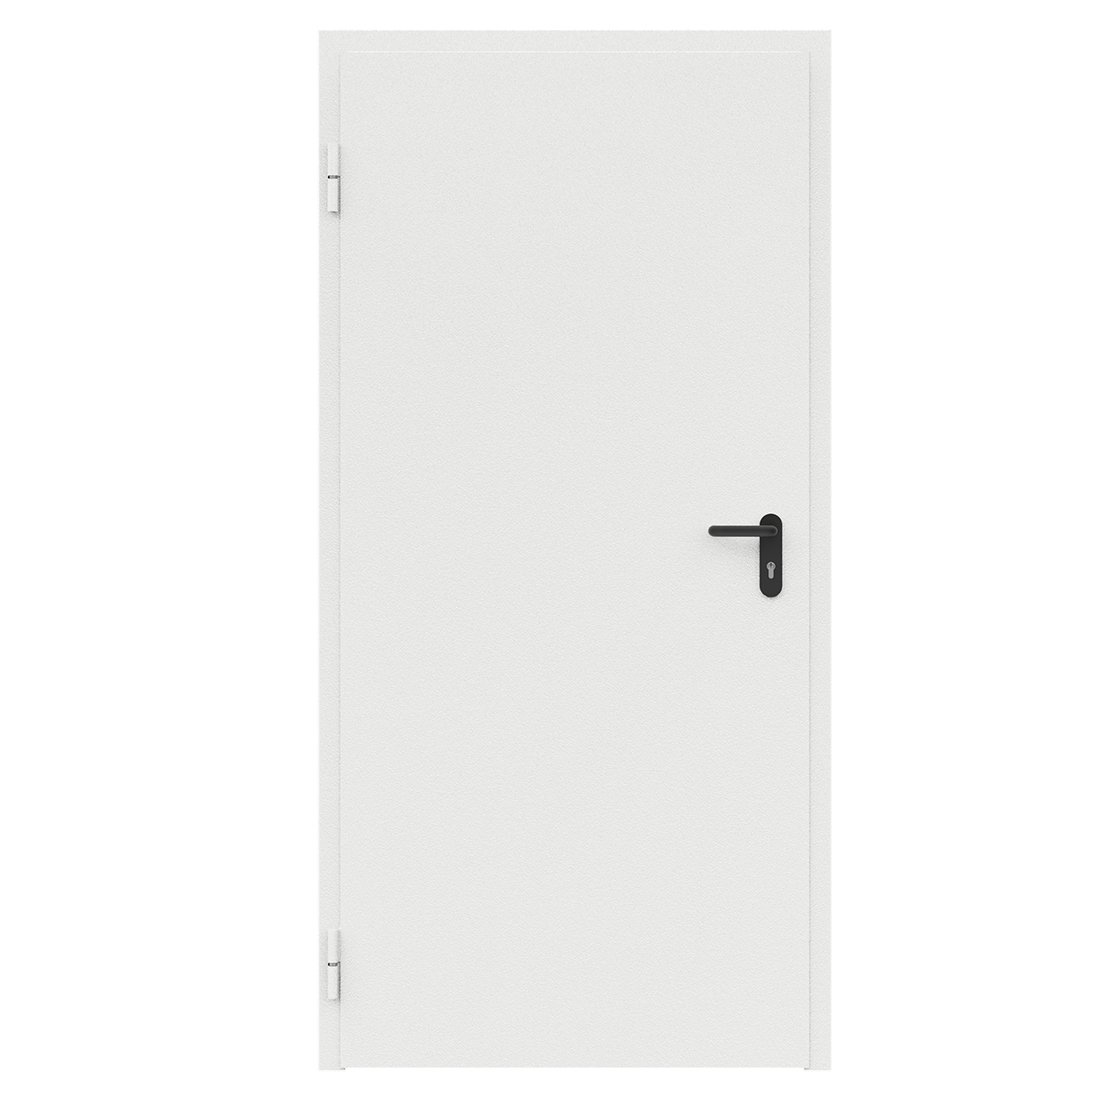 Дверь противопожарная металлическая ДПМ-Пульс-01/60К (EI 60) сплошная, угловая коробка (950х2075), без порога, левая, RAL9016